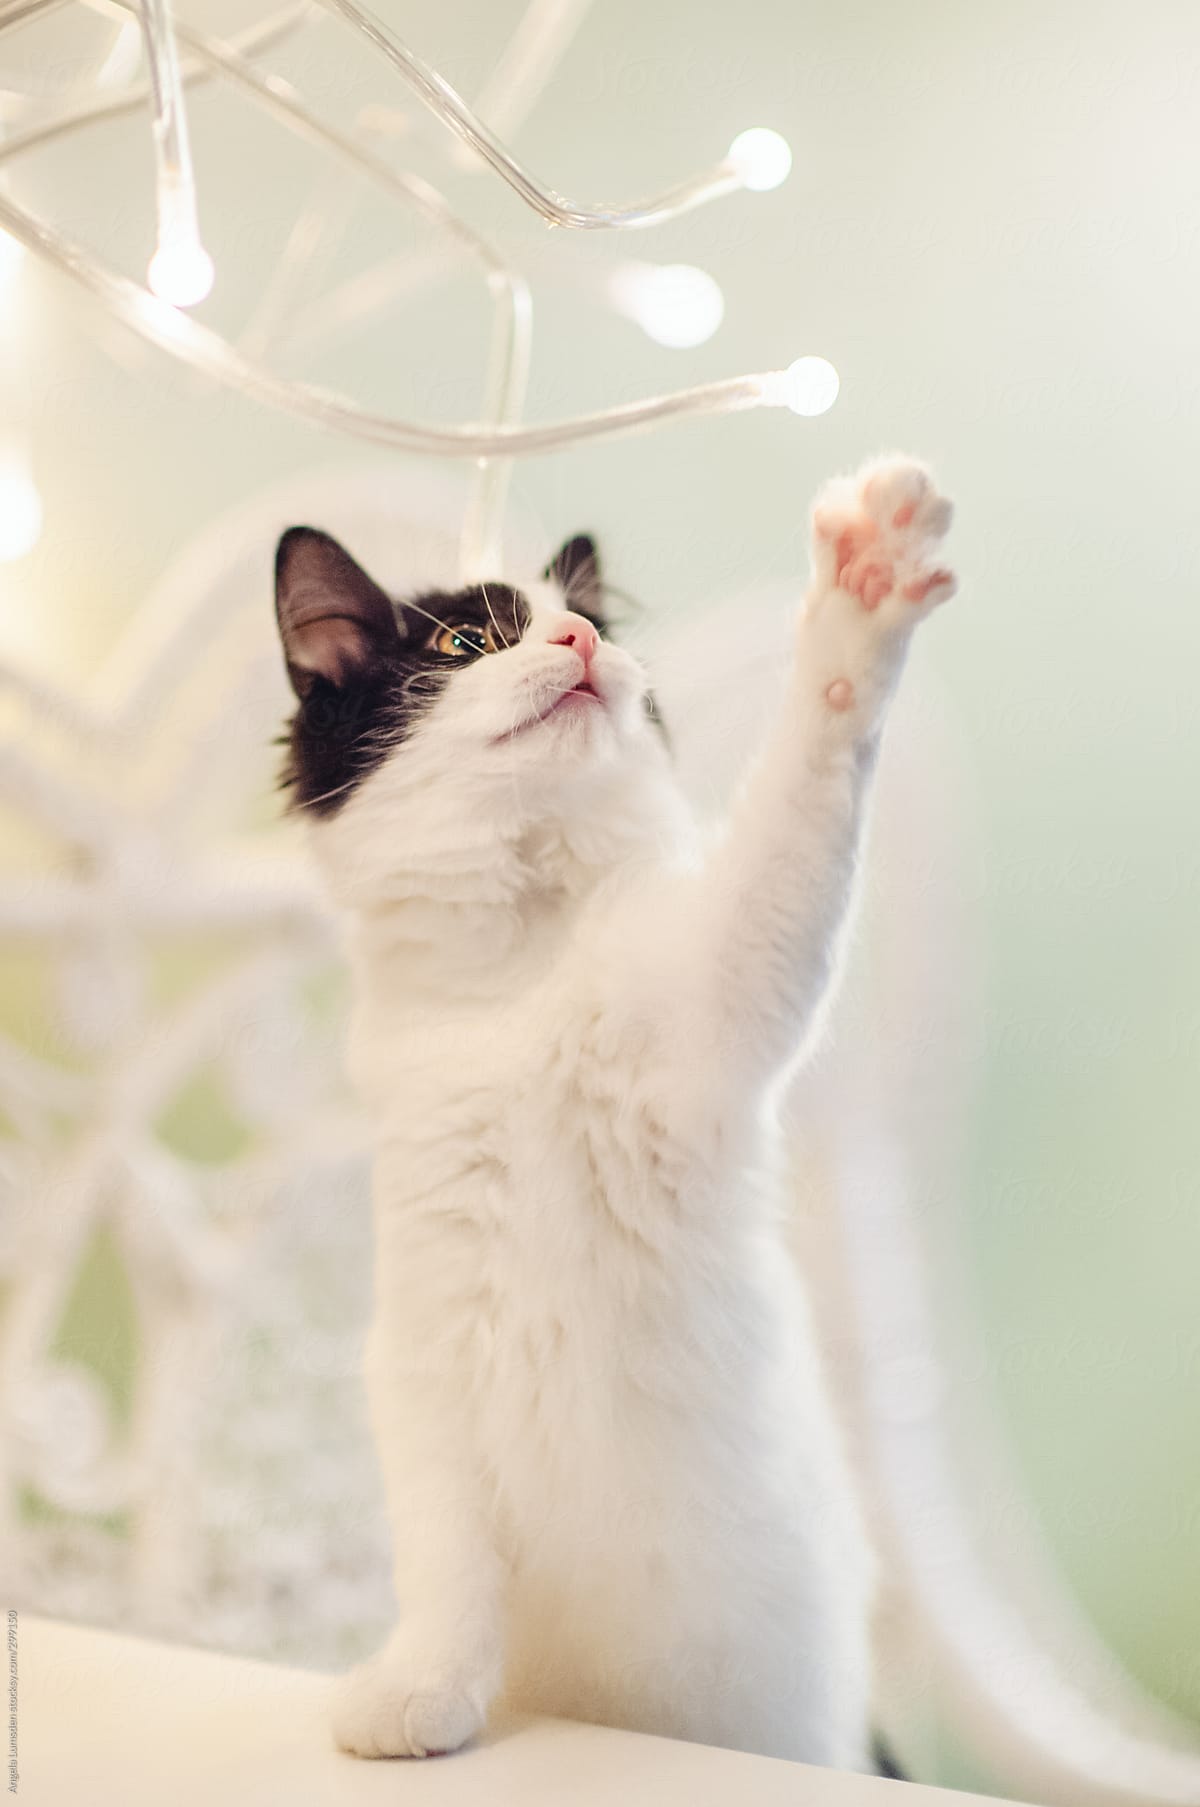 Kitten reaching for decorative lighting